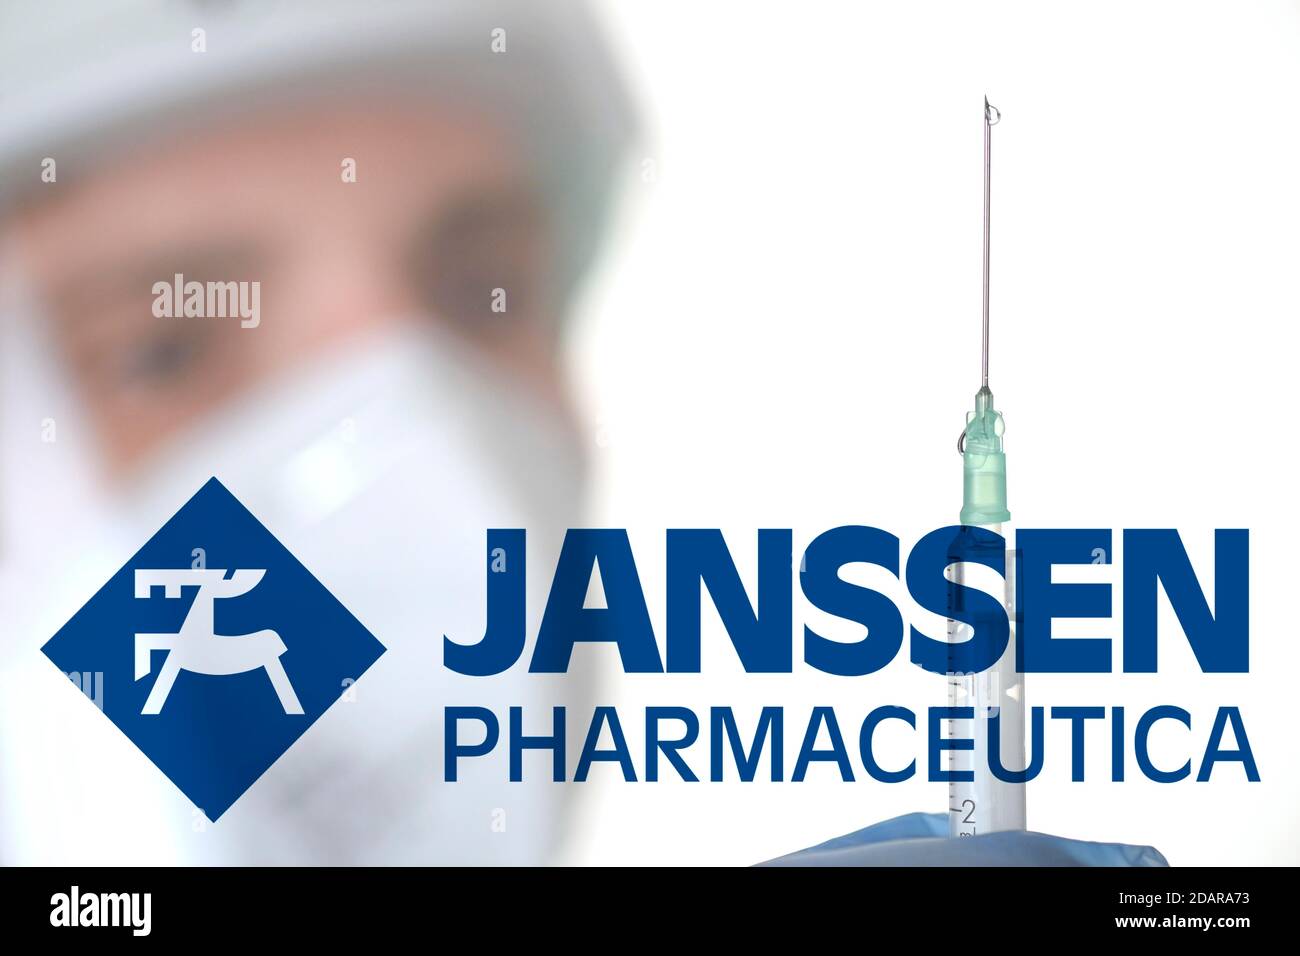 Image symbole vaccin Corona de JANSSEN PHARMACEUTICA, homme avec seringue, crise corona, Bade-Wurtemberg, Allemagne Banque D'Images